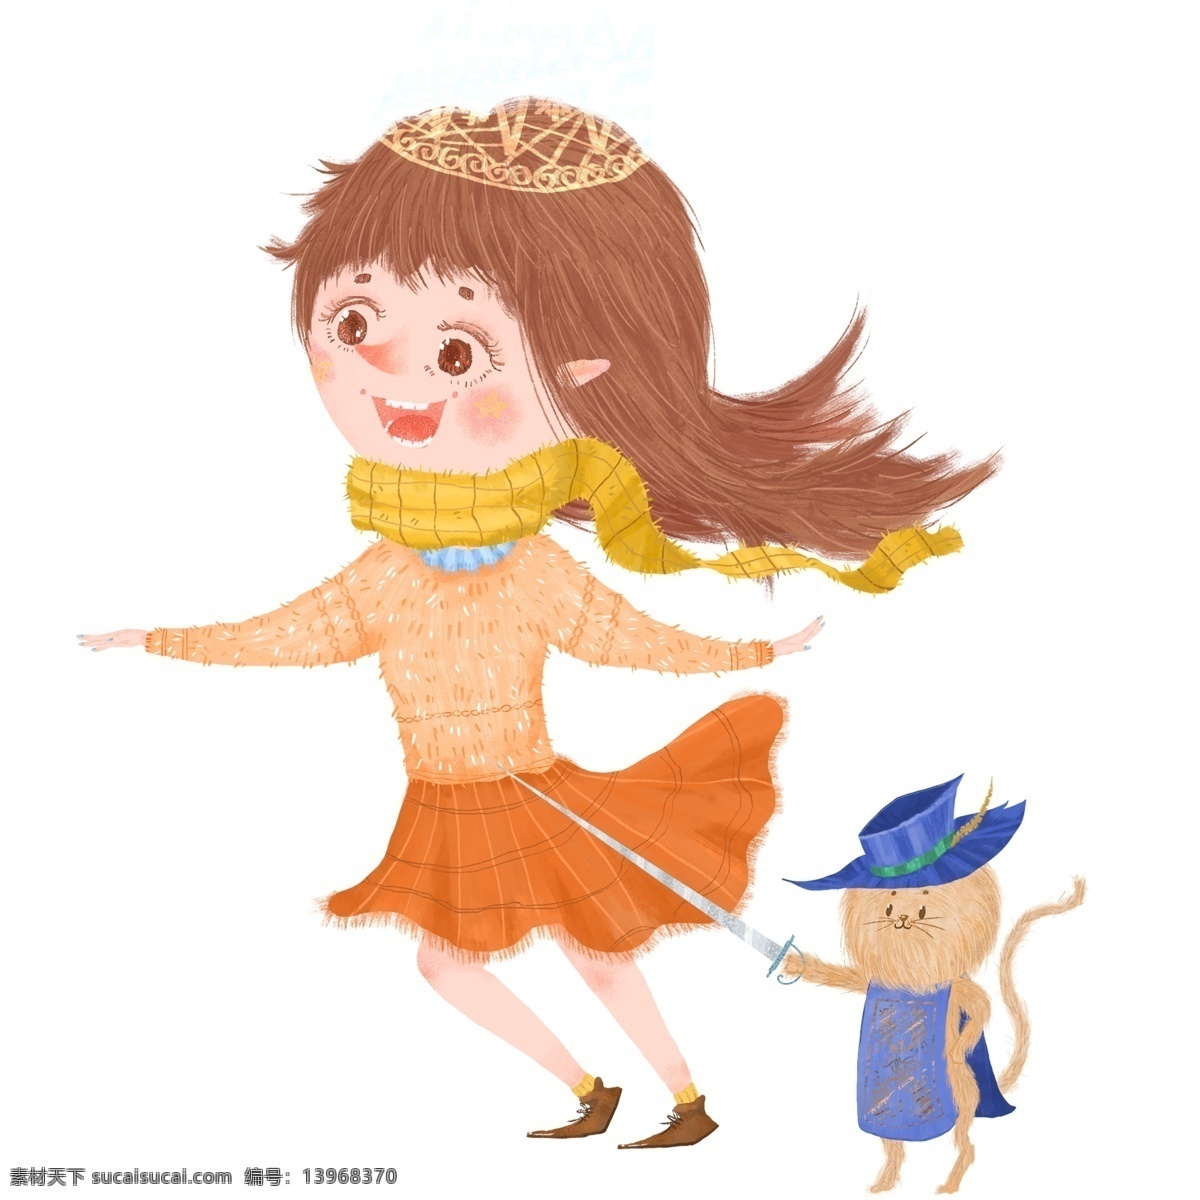 手绘 美味 森林 公主 骑士 猫 彩绘 唯美 童话人物 插画 皇冠 森林公主 公主设计 人物设计 骑士猫咪